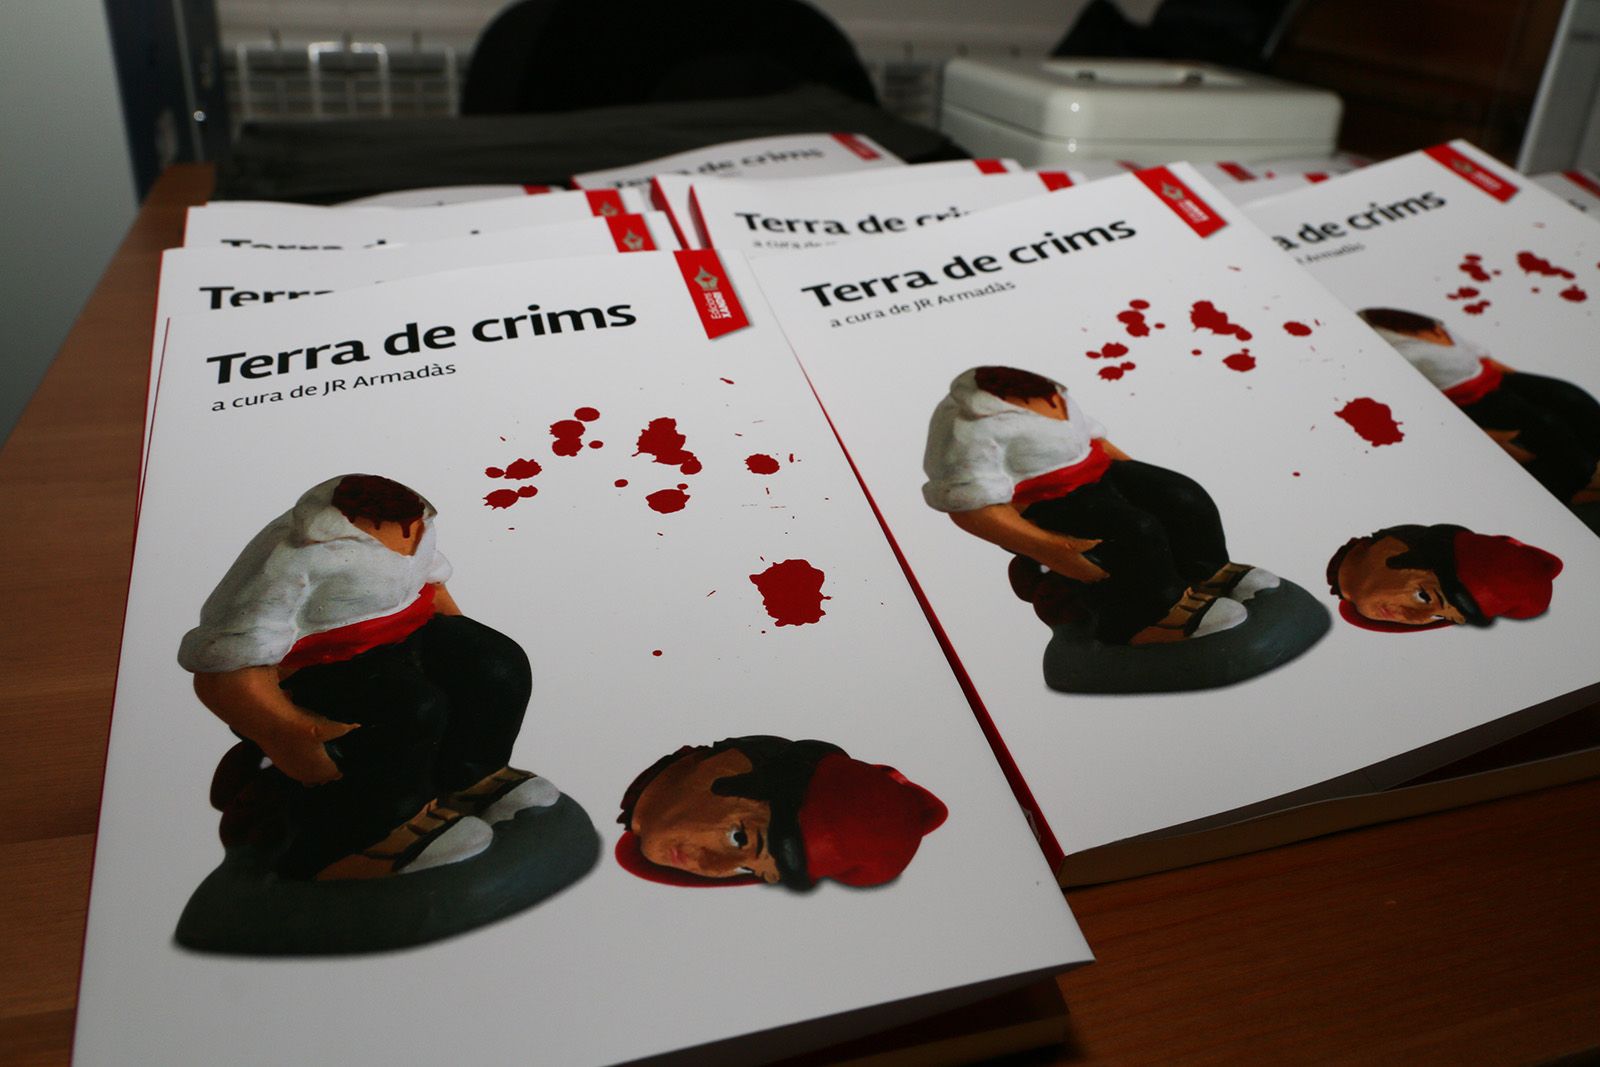 Presentació del llibre "Terra de crims" a Cal Temerari. Foto: Lali Álvarez